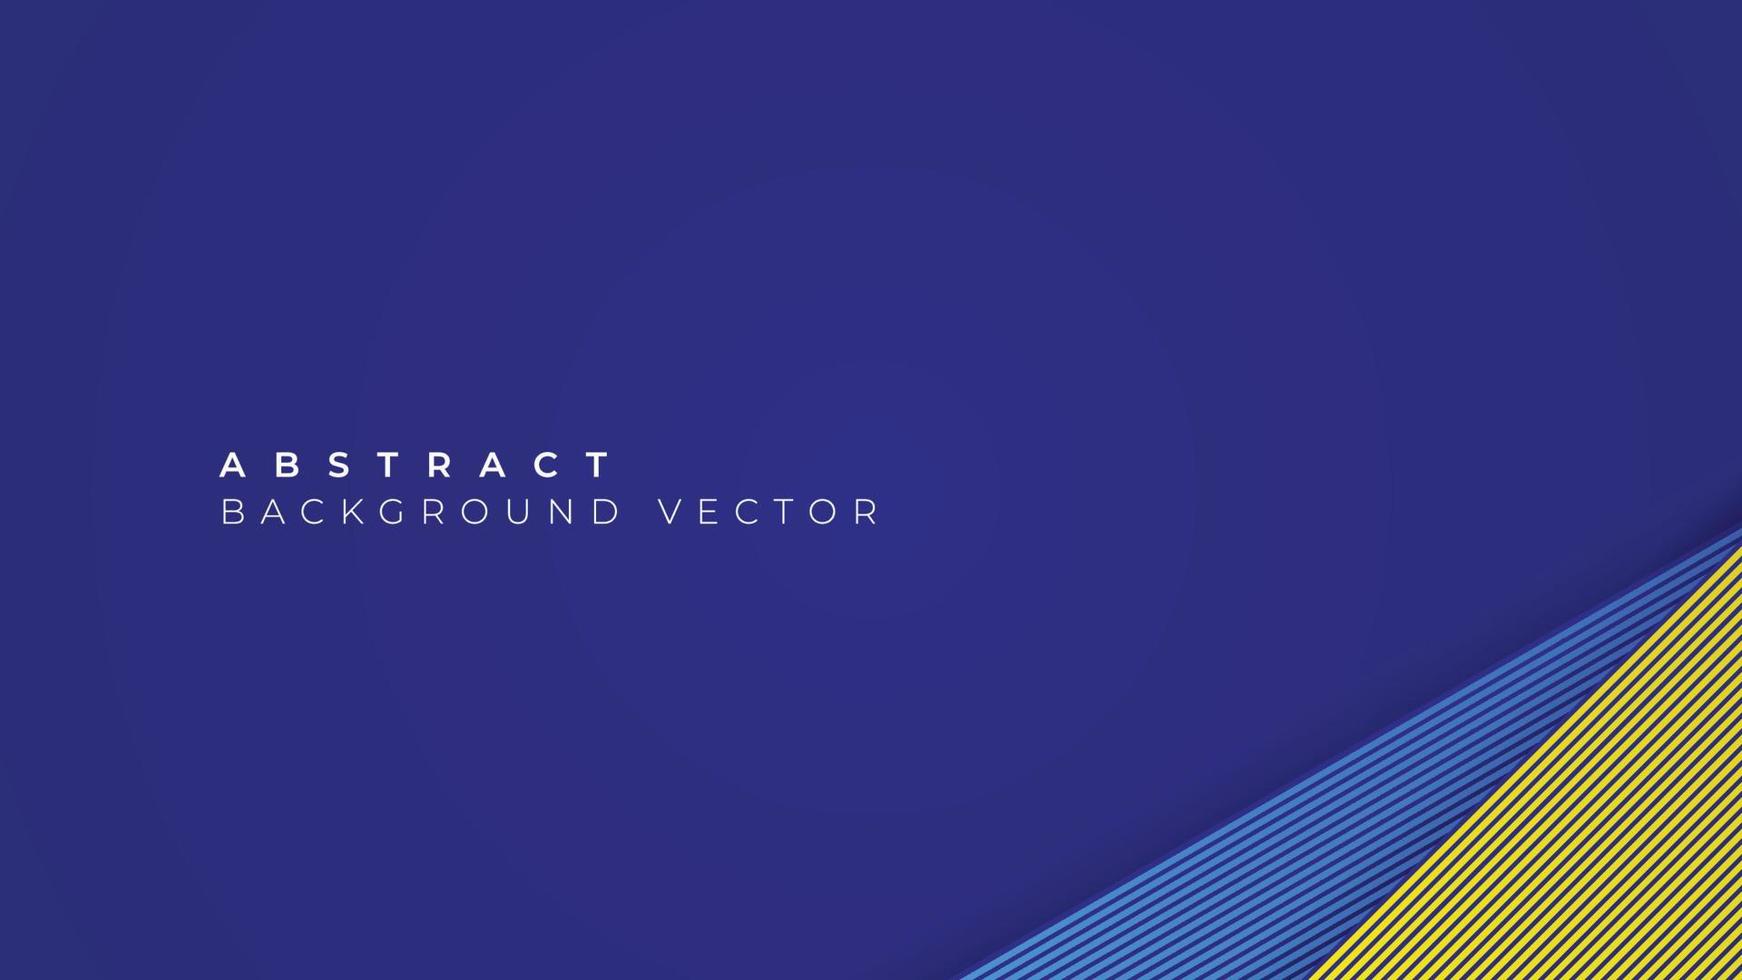 moderne abstracte achtergrond met blauwe en gele strepen. geometrische contouren voor posters, flyers, websites, covers, banners, reclame. vector illustratie